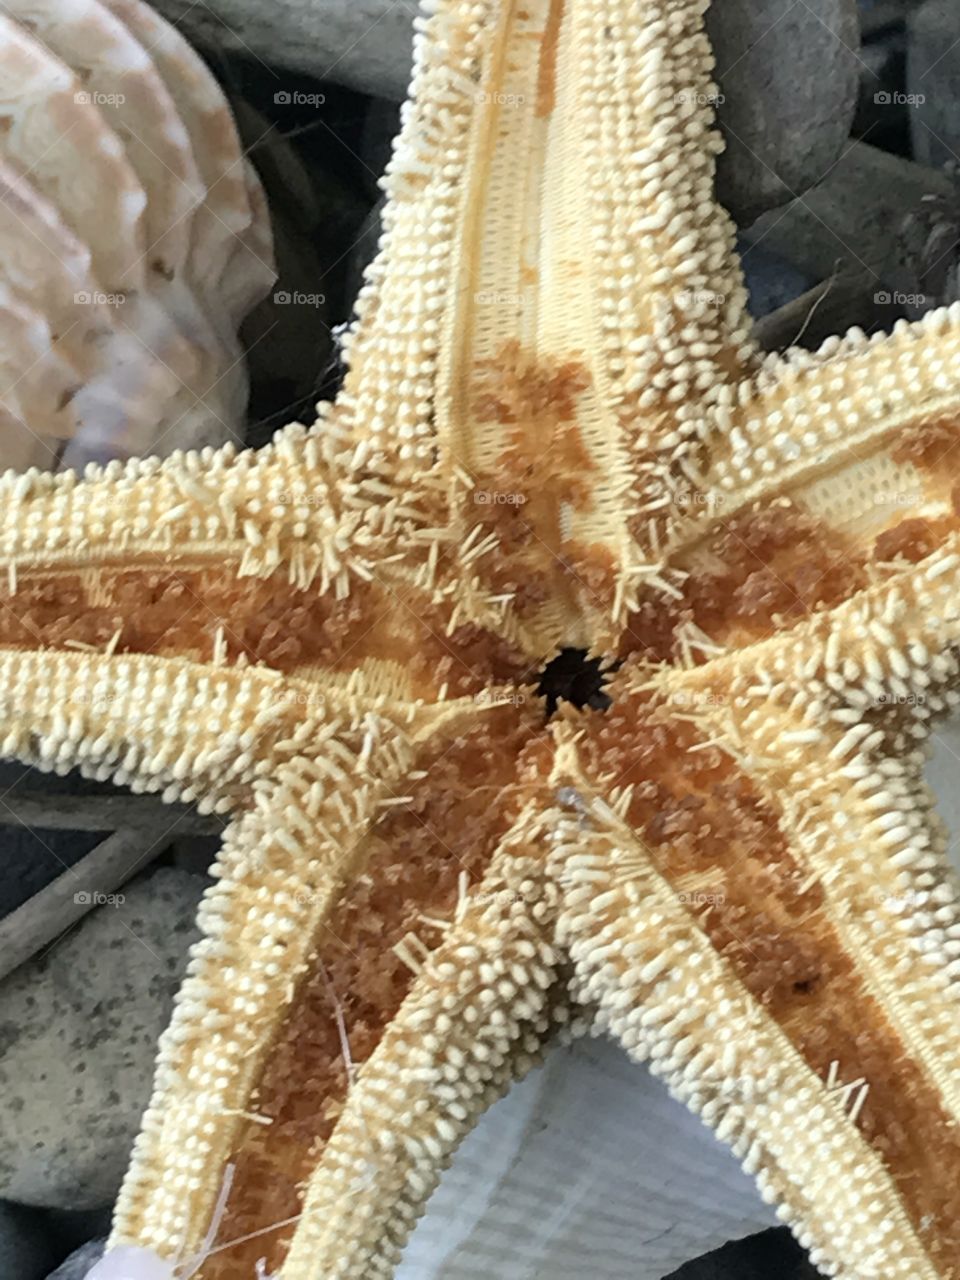 Starfish up close 